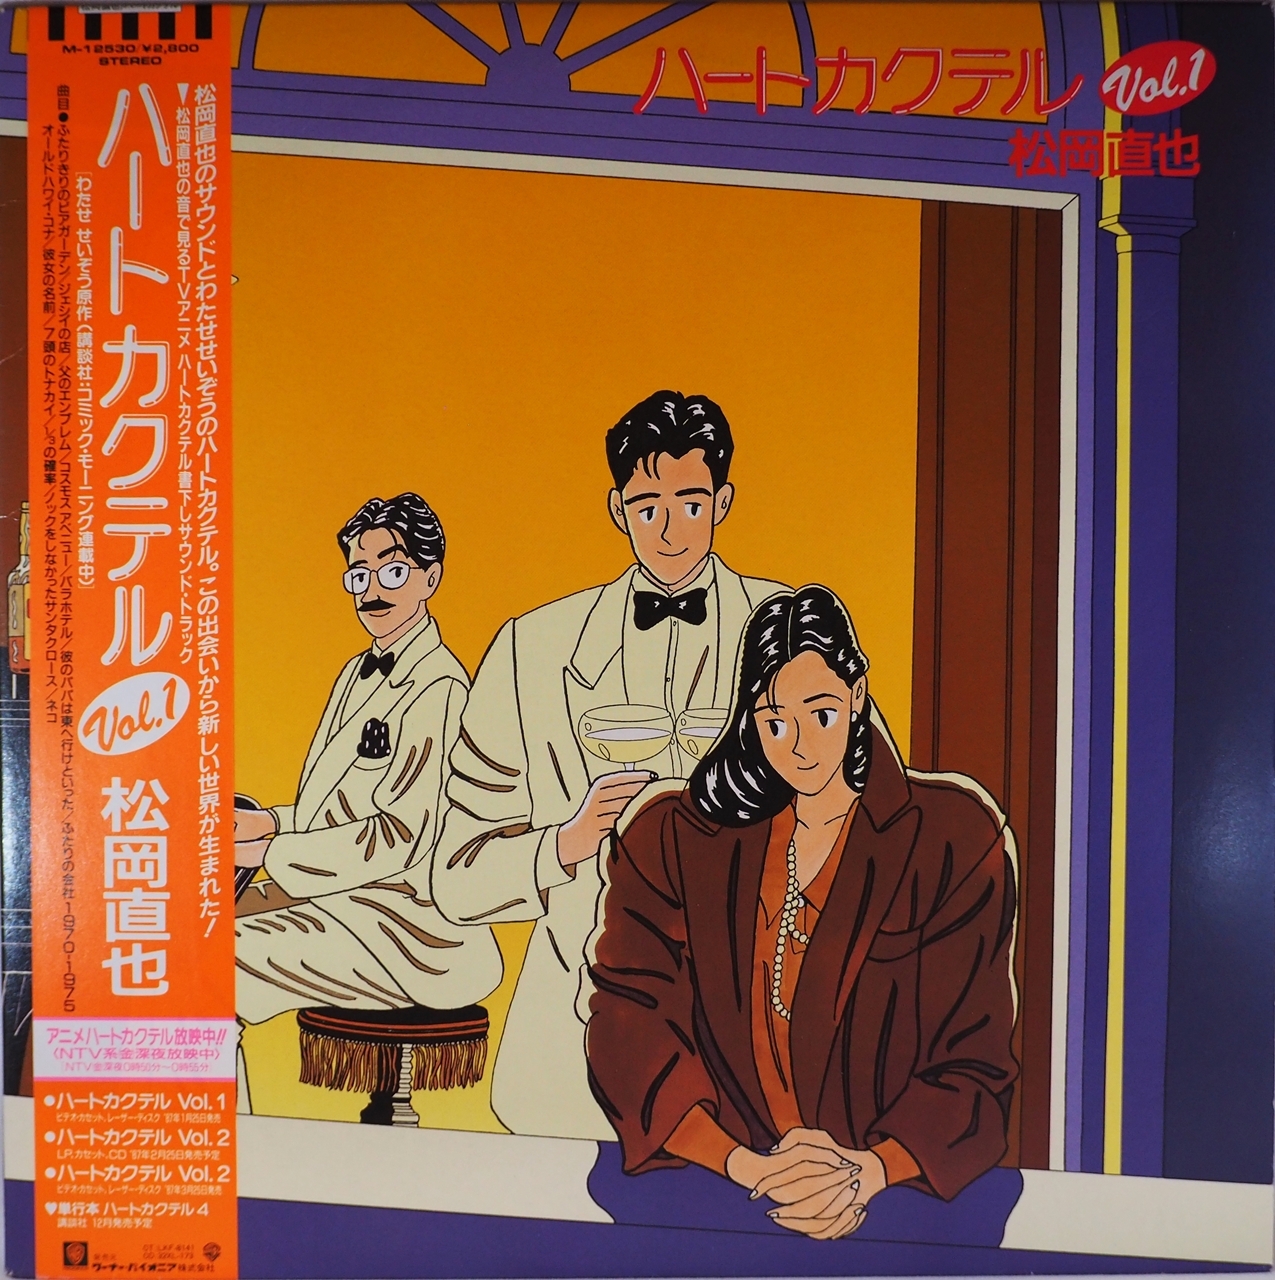 ハートカクテル Vol 1 松岡直也 Something Records Osaka サムシング レコード 大阪